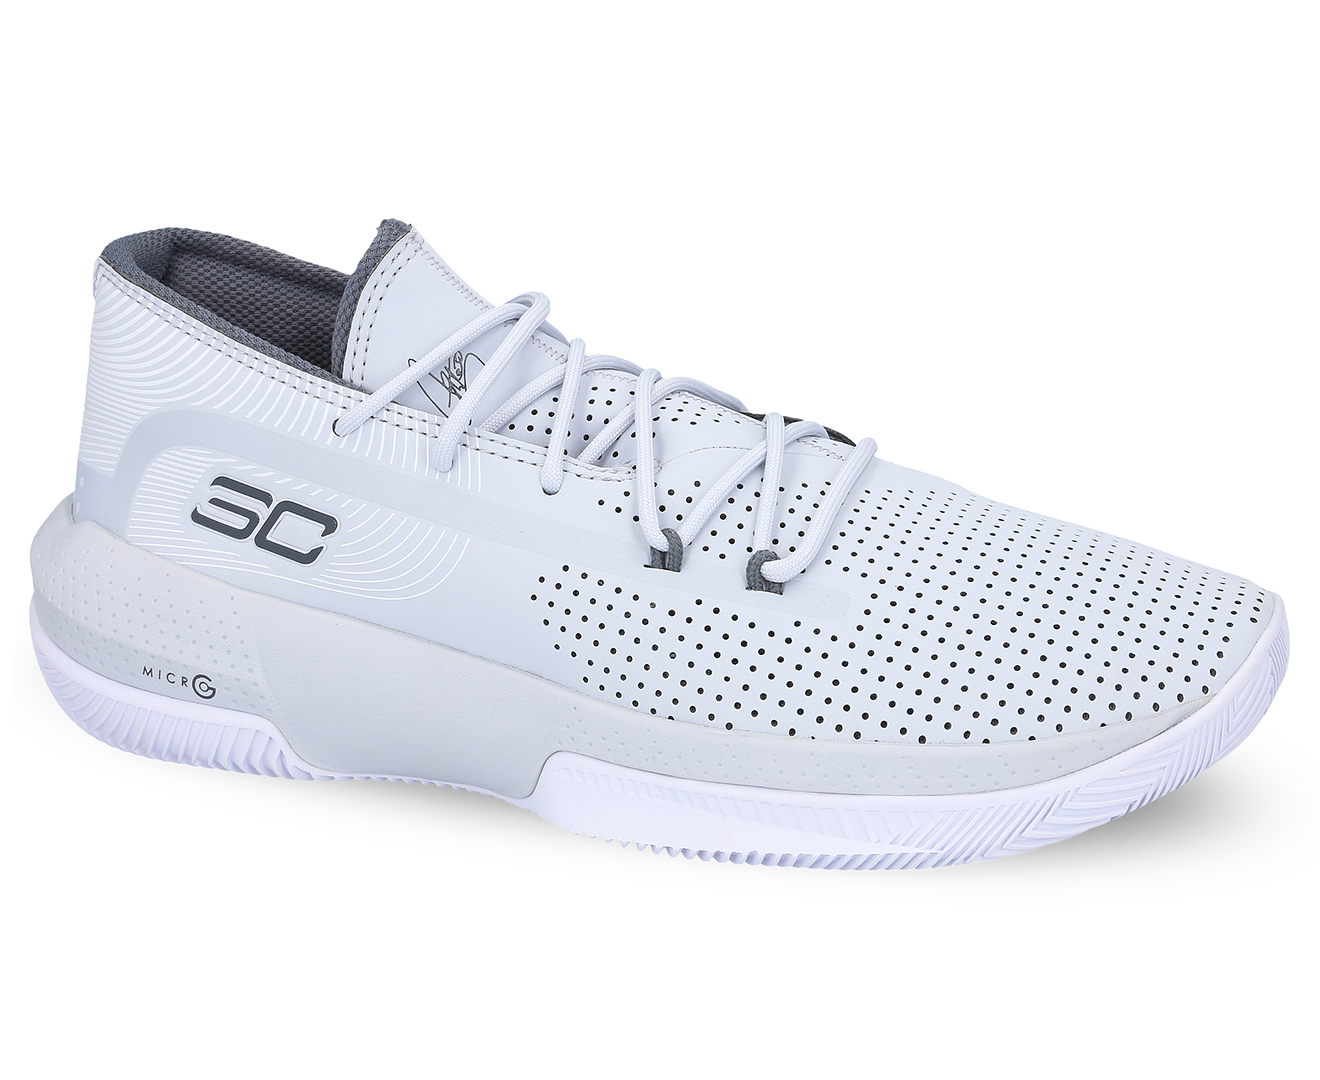 Under Armour Men's SC 3ZERO III Basketball Shoes - Halo Grey | Catch.com.au